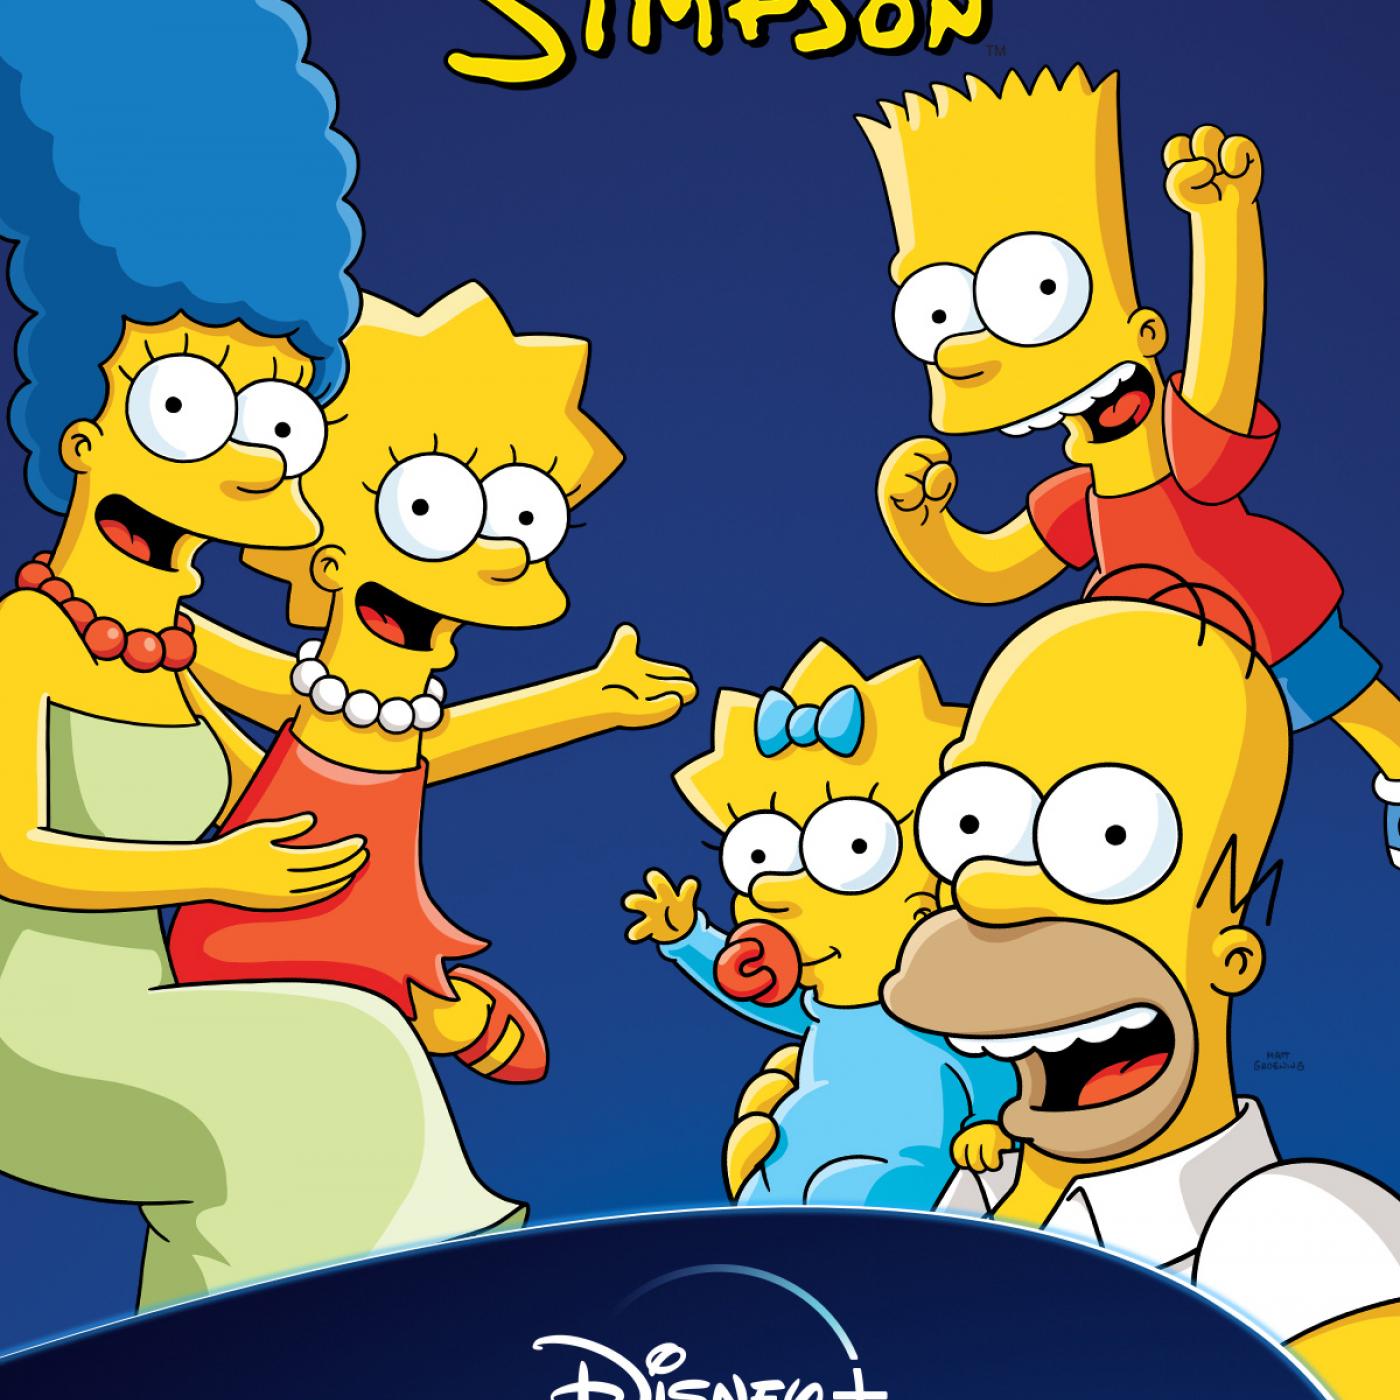 Pour les fans des Simpson